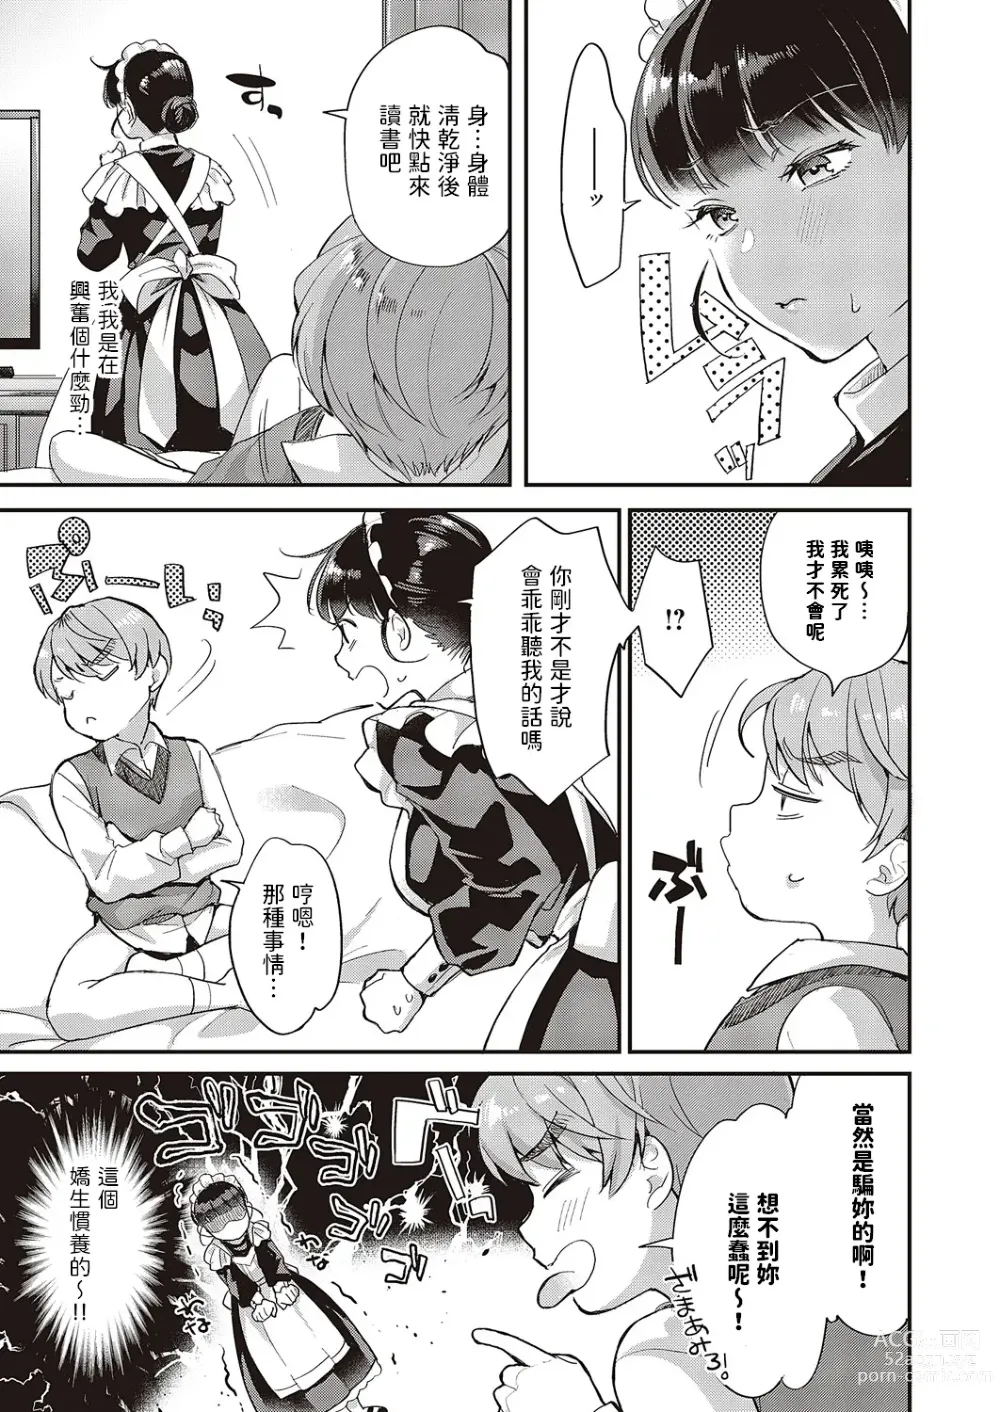 Page 9 of manga Maid-san no Seikatsu Shidou